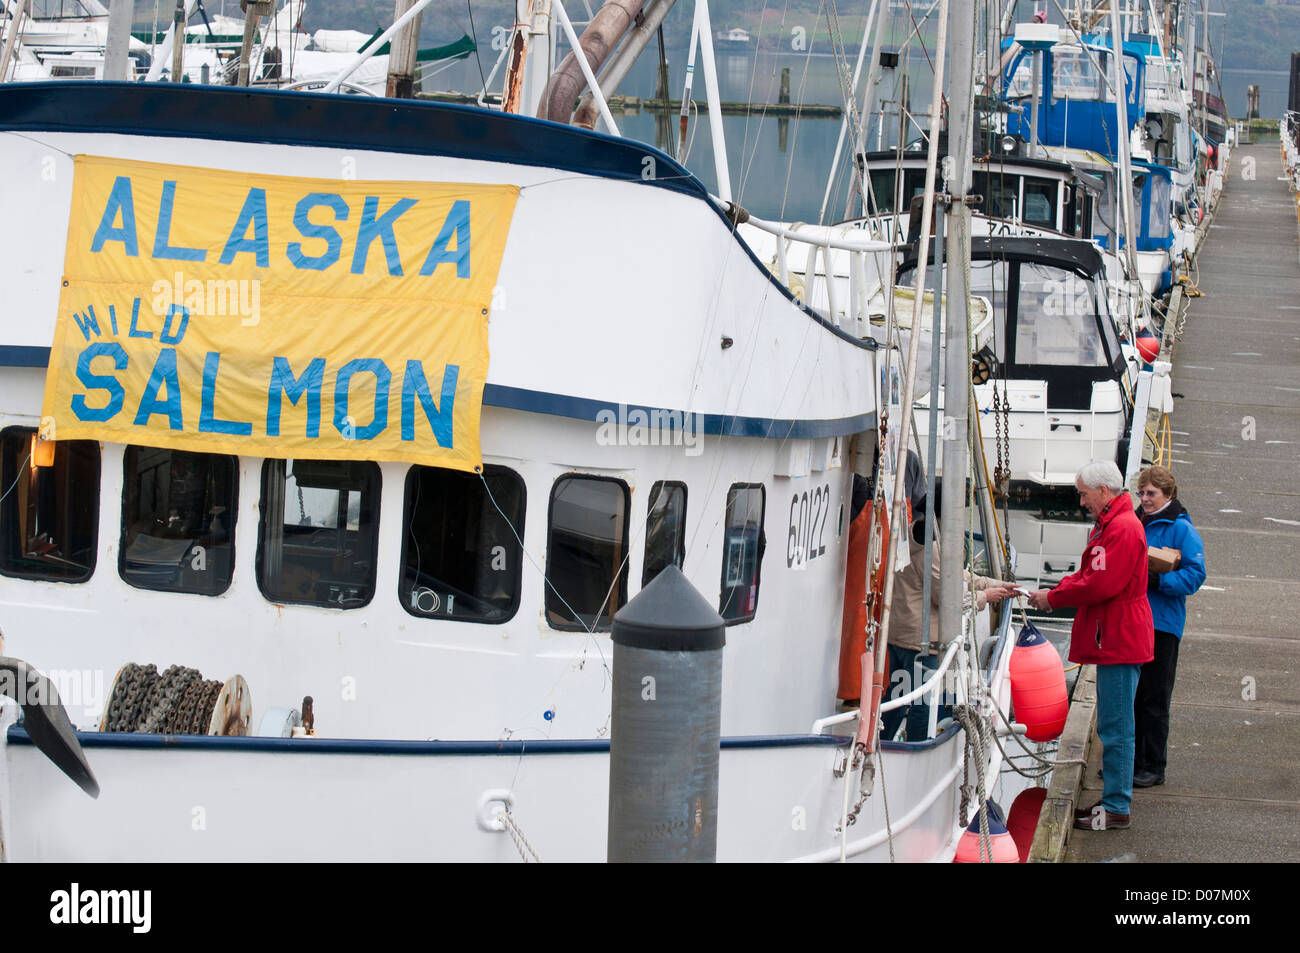 Nous, WA, Kitsap County, Poulsbo. Vend pêcheur de saumon de l'Alaska sauvage de quai à Poulsbo marina. (MR) Banque D'Images